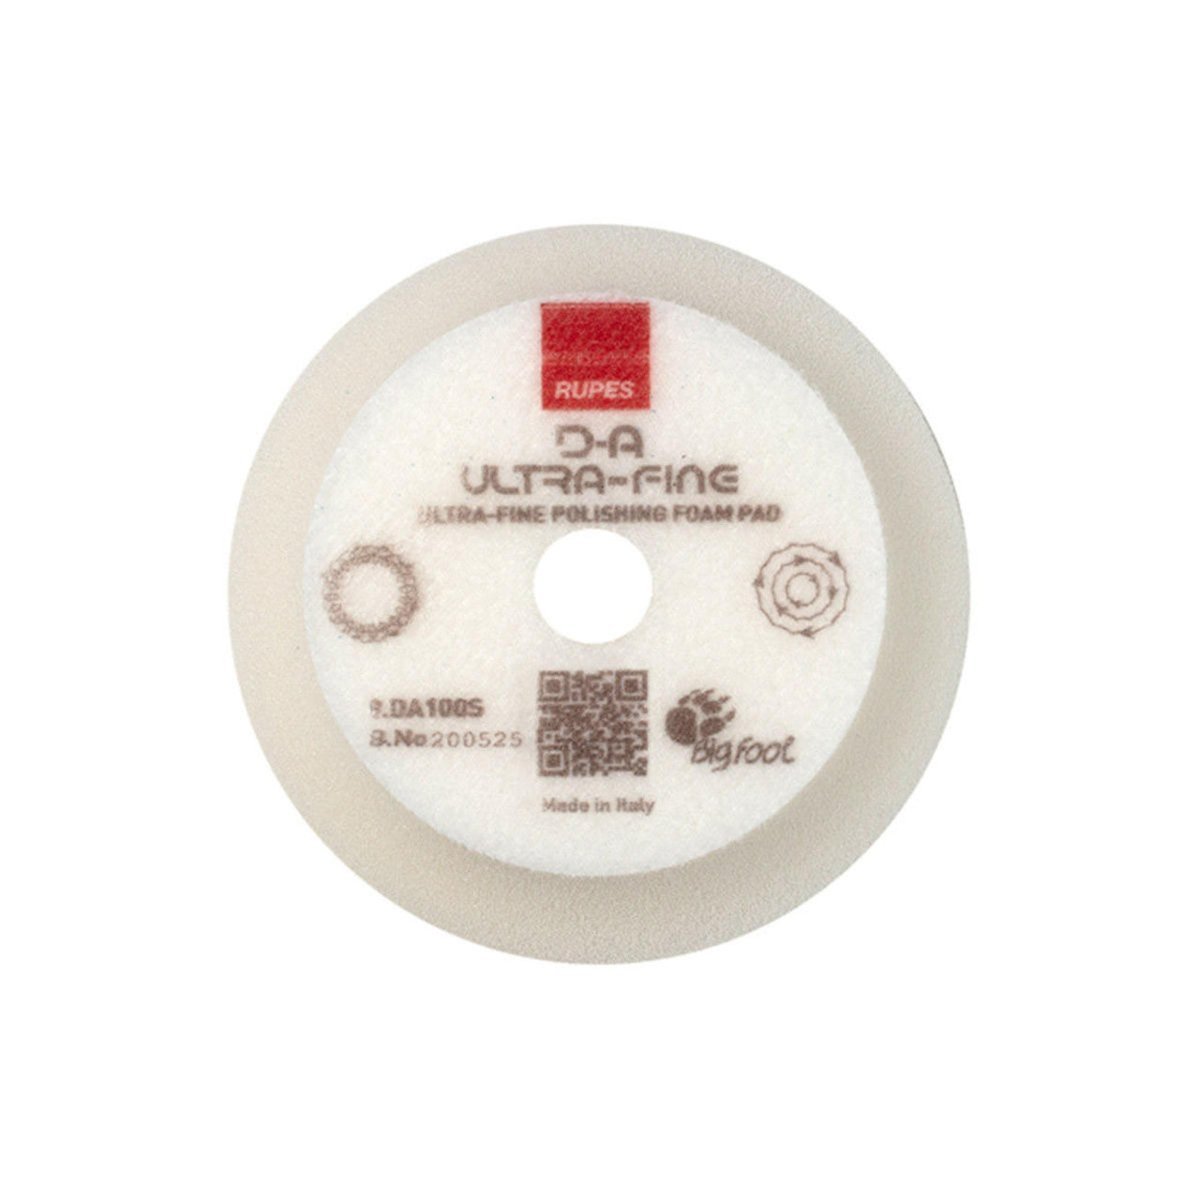 Rupes DA Ultrafine Foam Pad (White) - Custom Dealer Solutions-9.DA100S